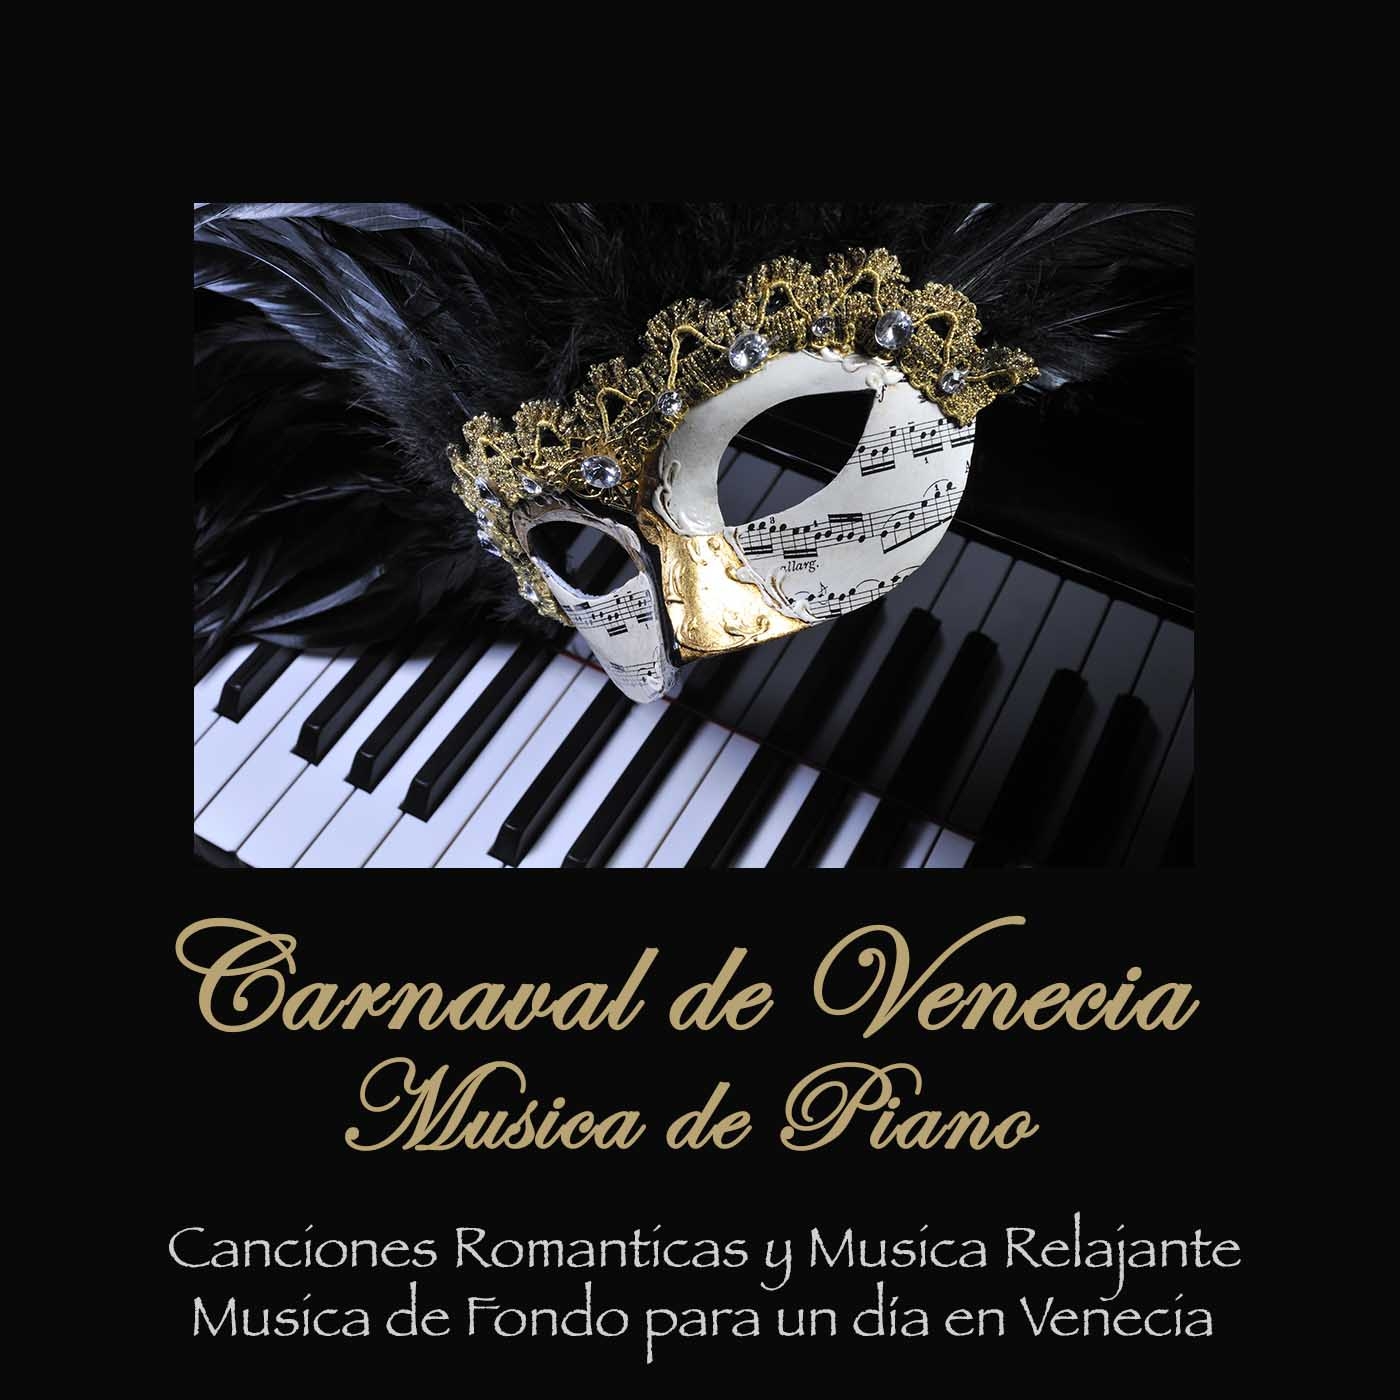 Music of the Night - Musicas de Piano Romanticas